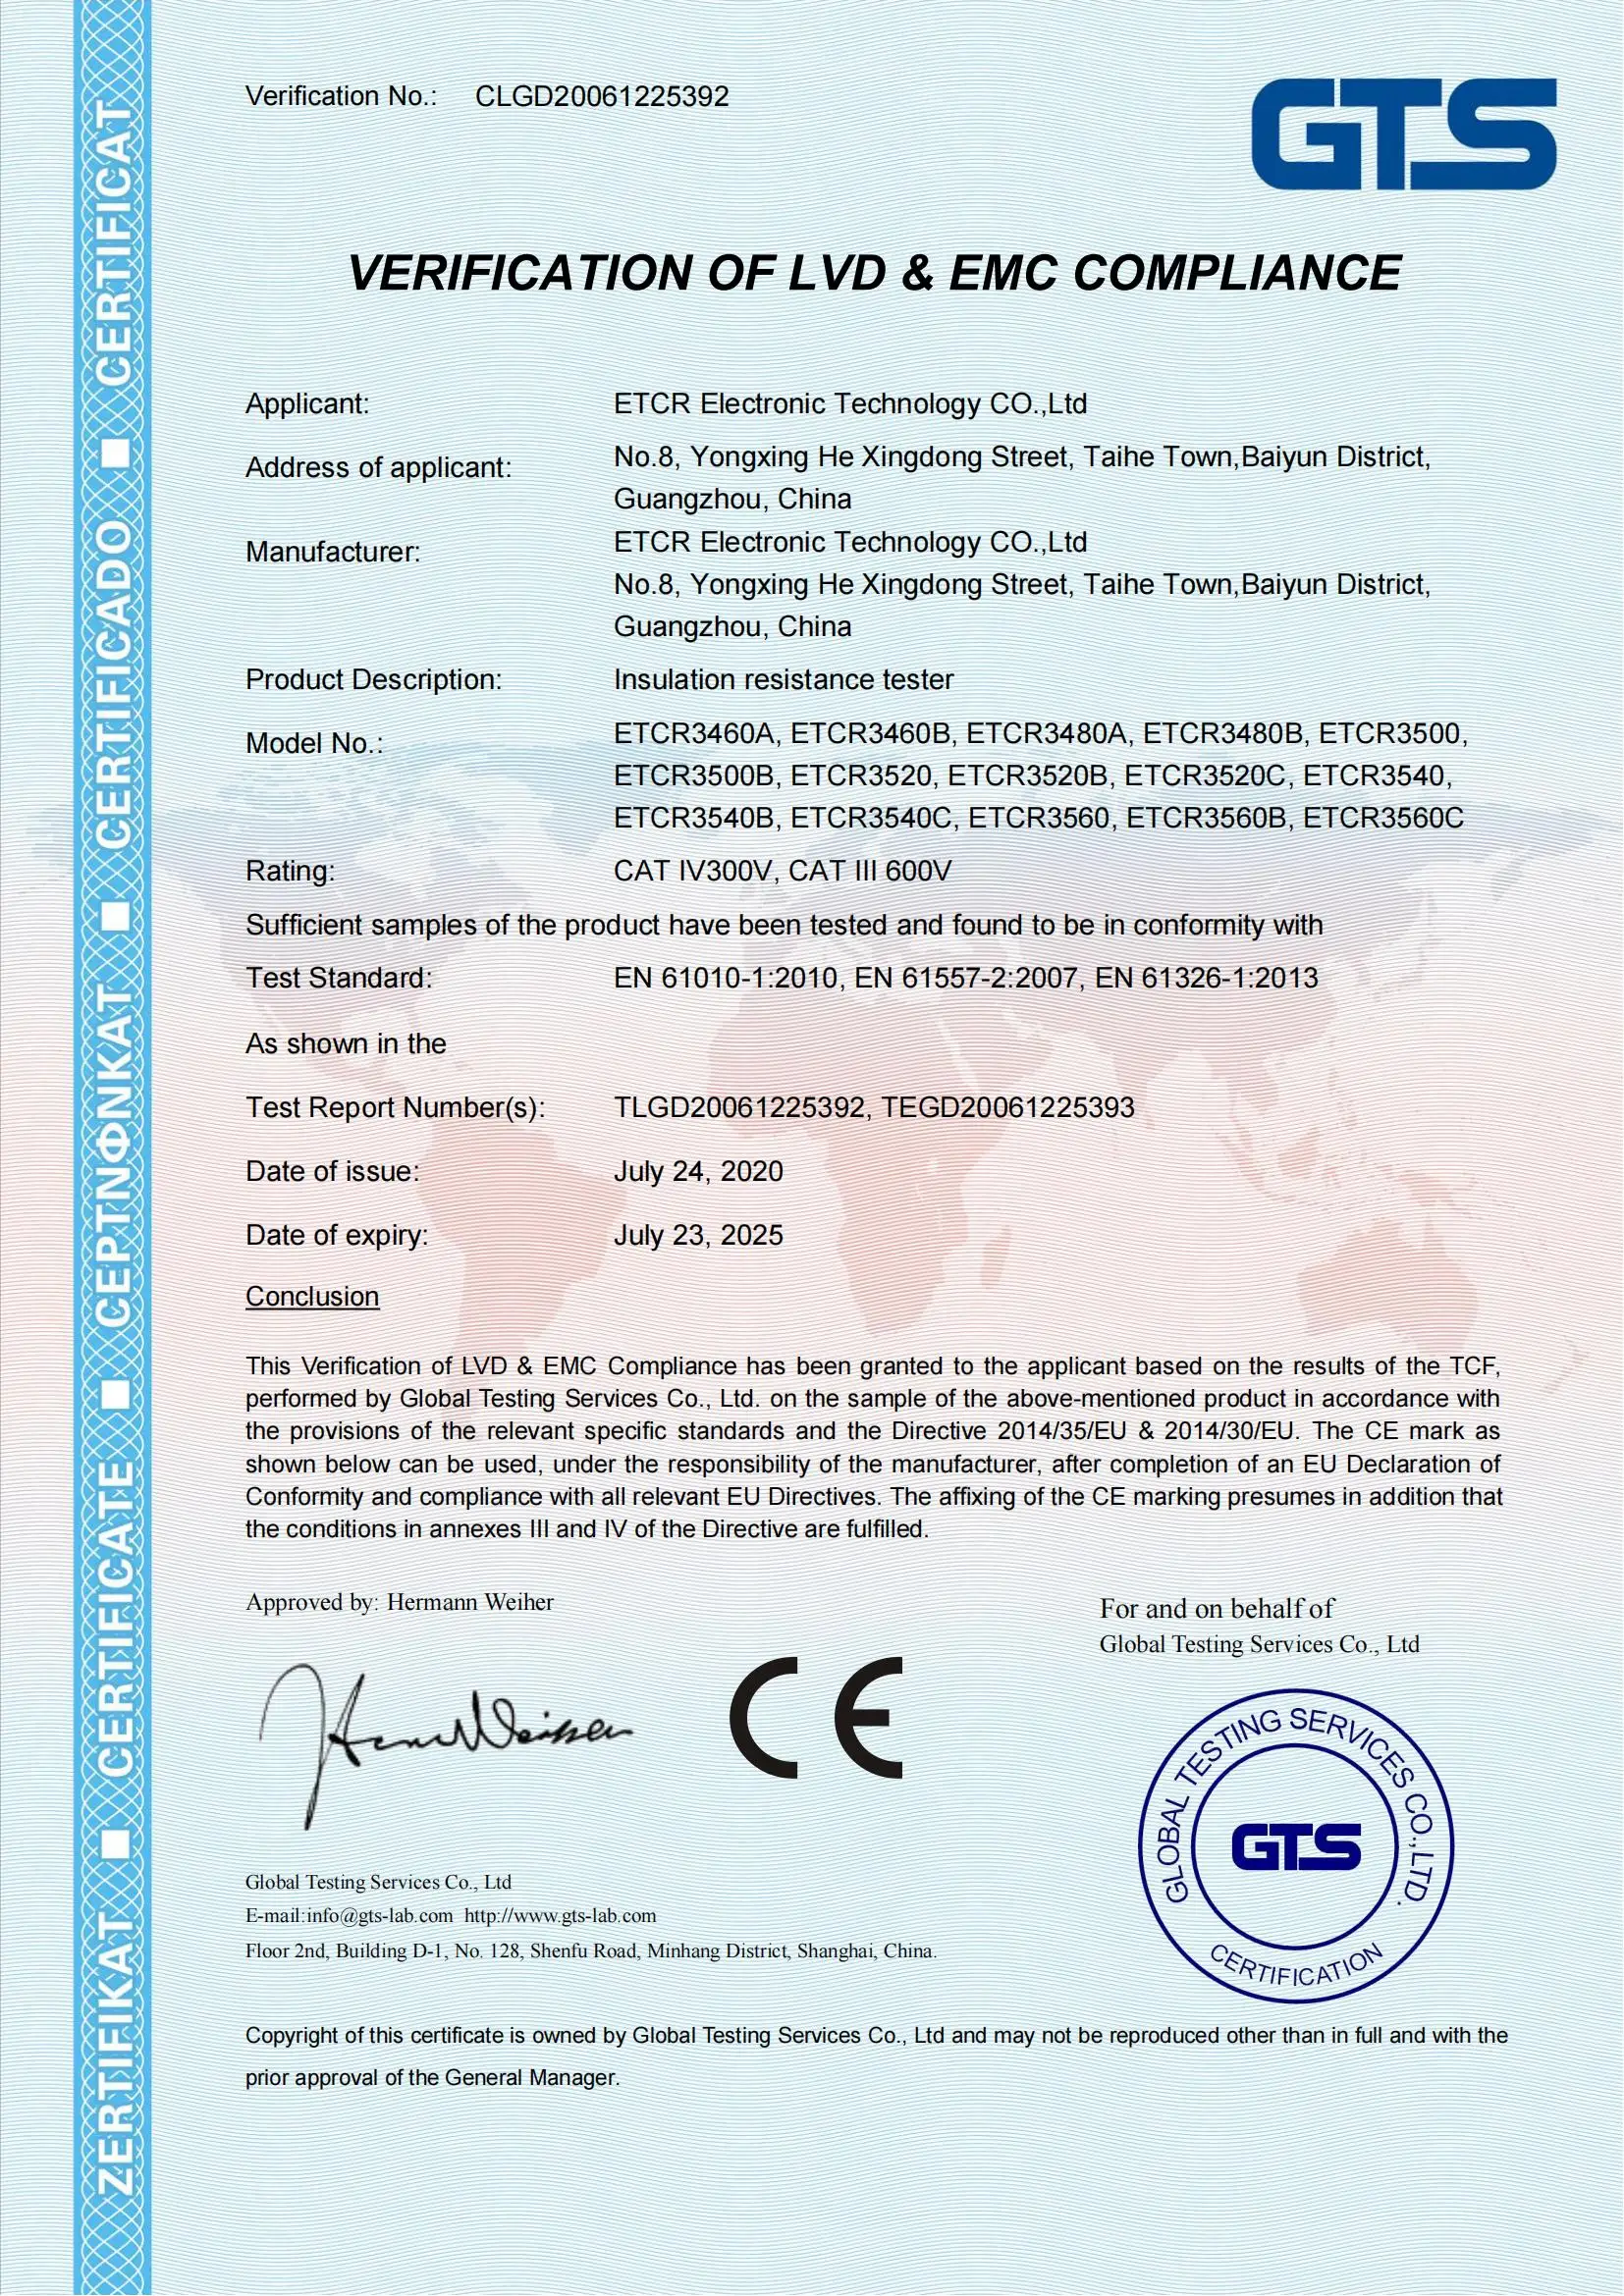 ETCR3520C High Performance HV Insulation Resistance Tester Manufacturer &  Supplier